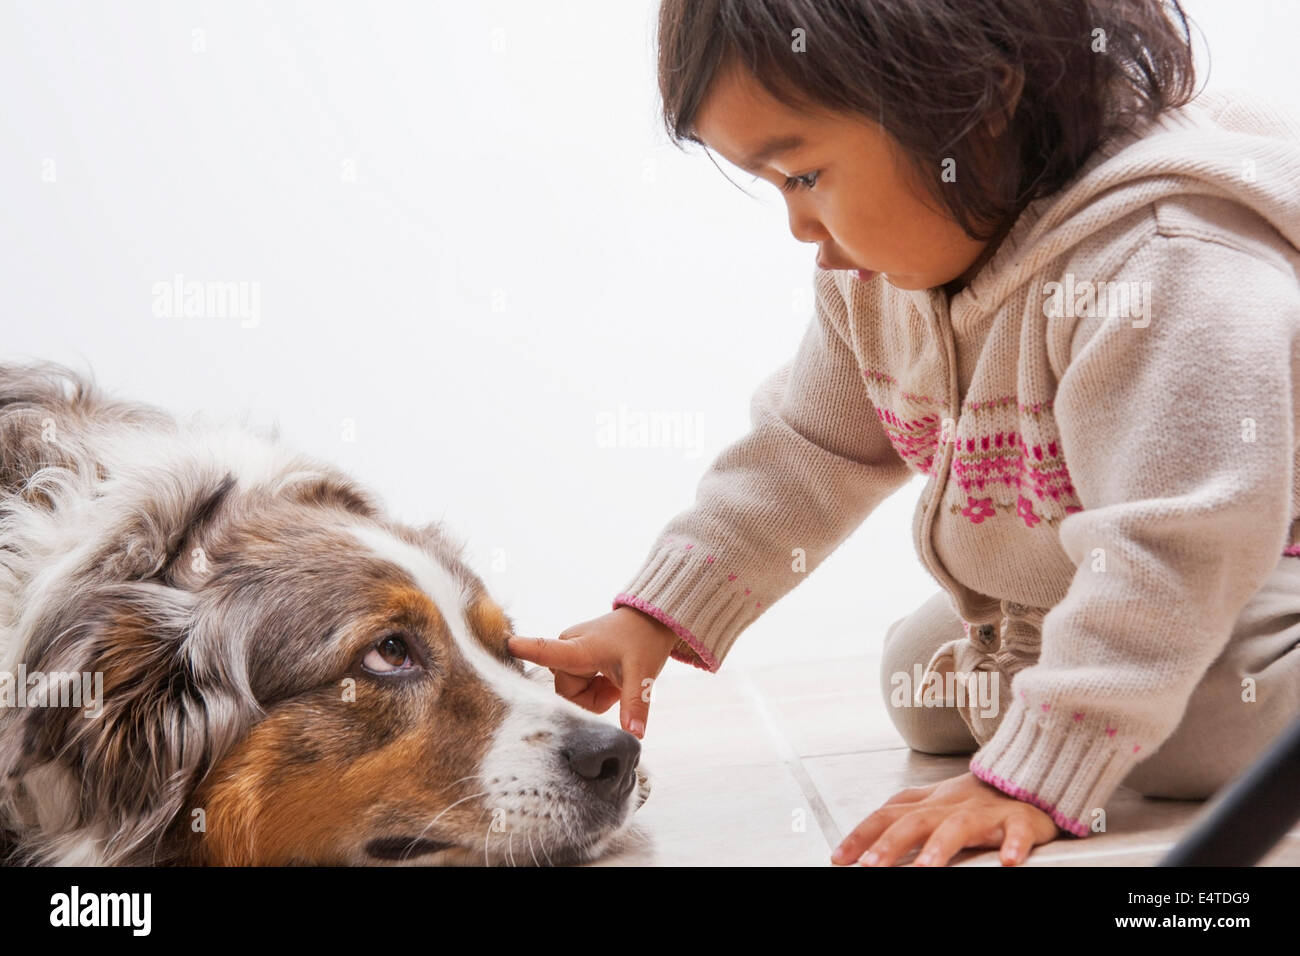 Toddler Girl touching Australian Shapherd Dog's Eye Stock Photo